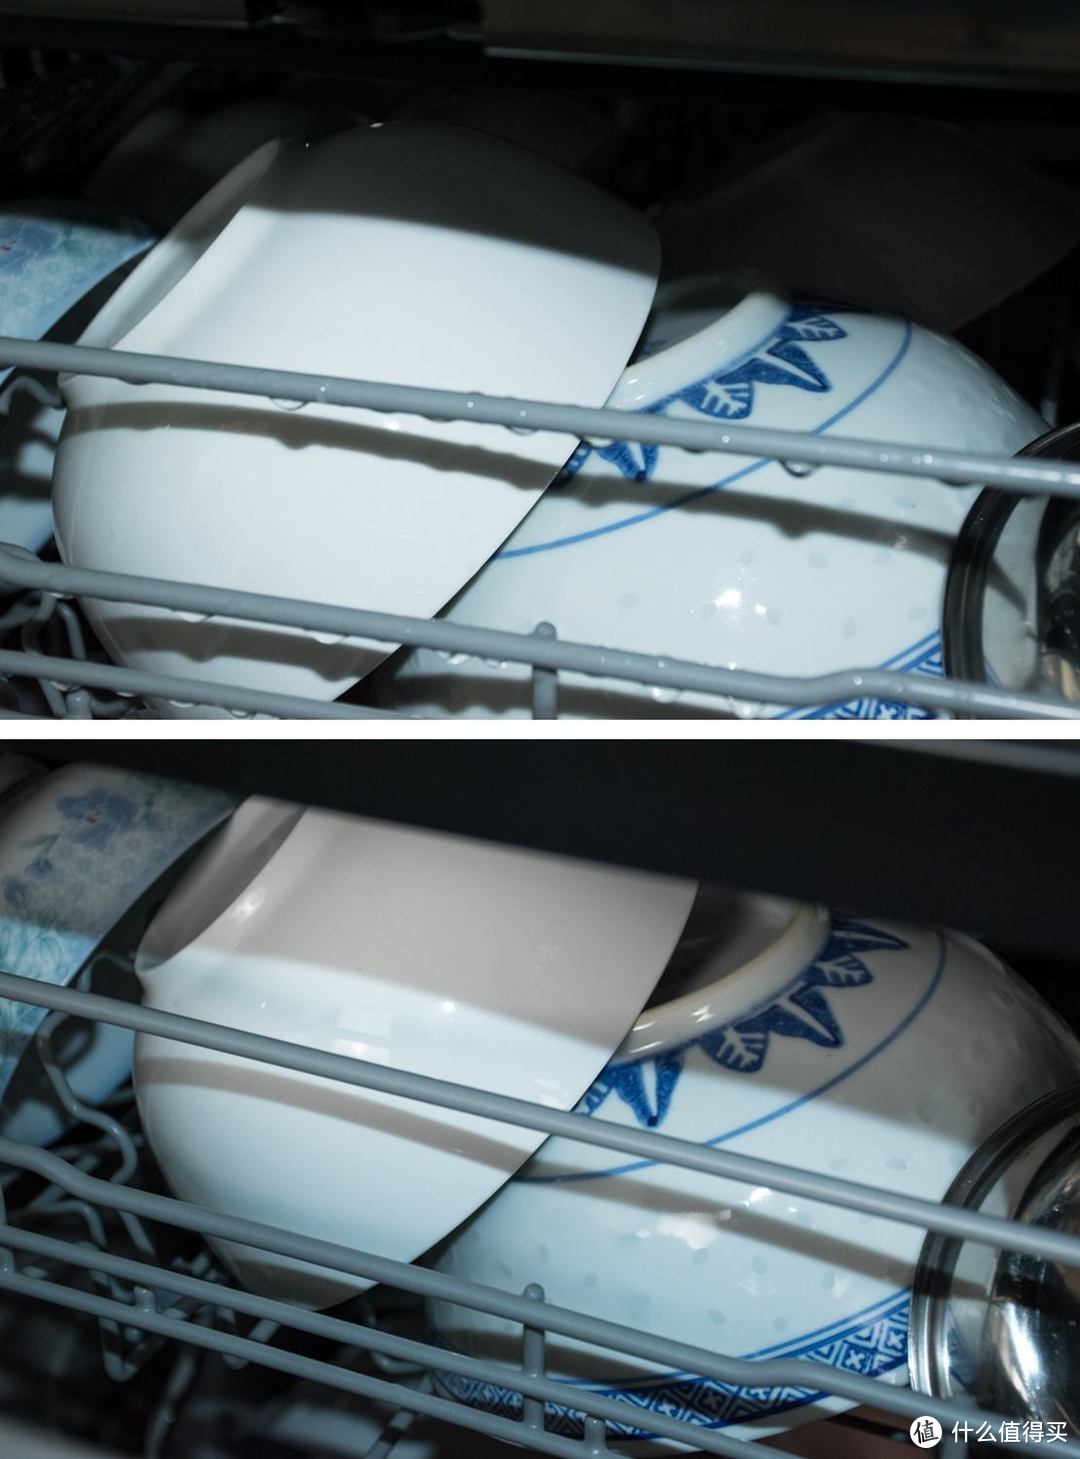 分区清洗，节能高效-海尔洗碗机EYW131286BKDU1 评测